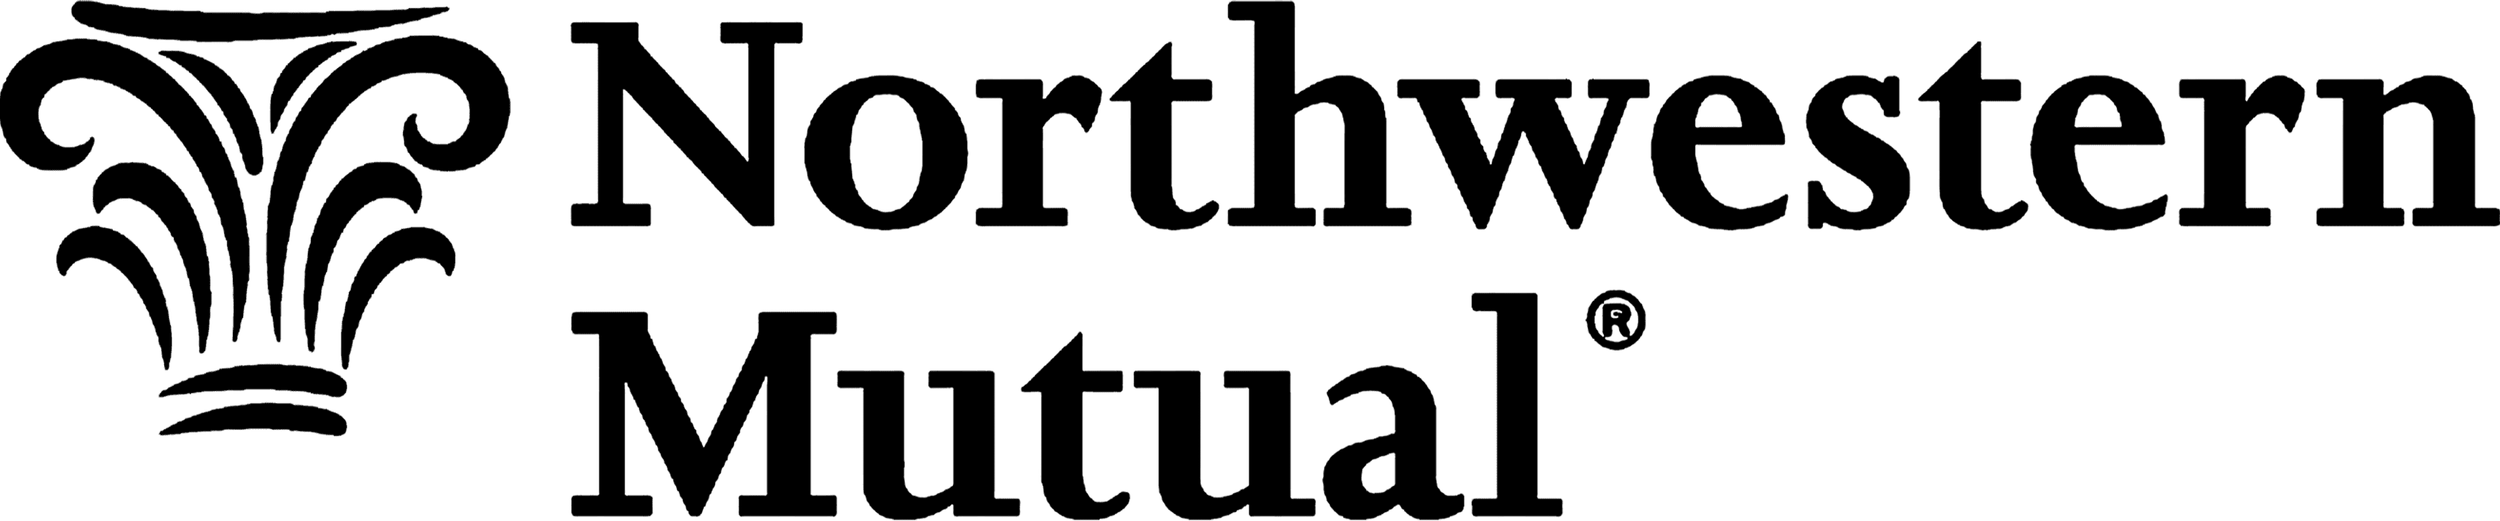 Black Northwestern Mutual Logo.png